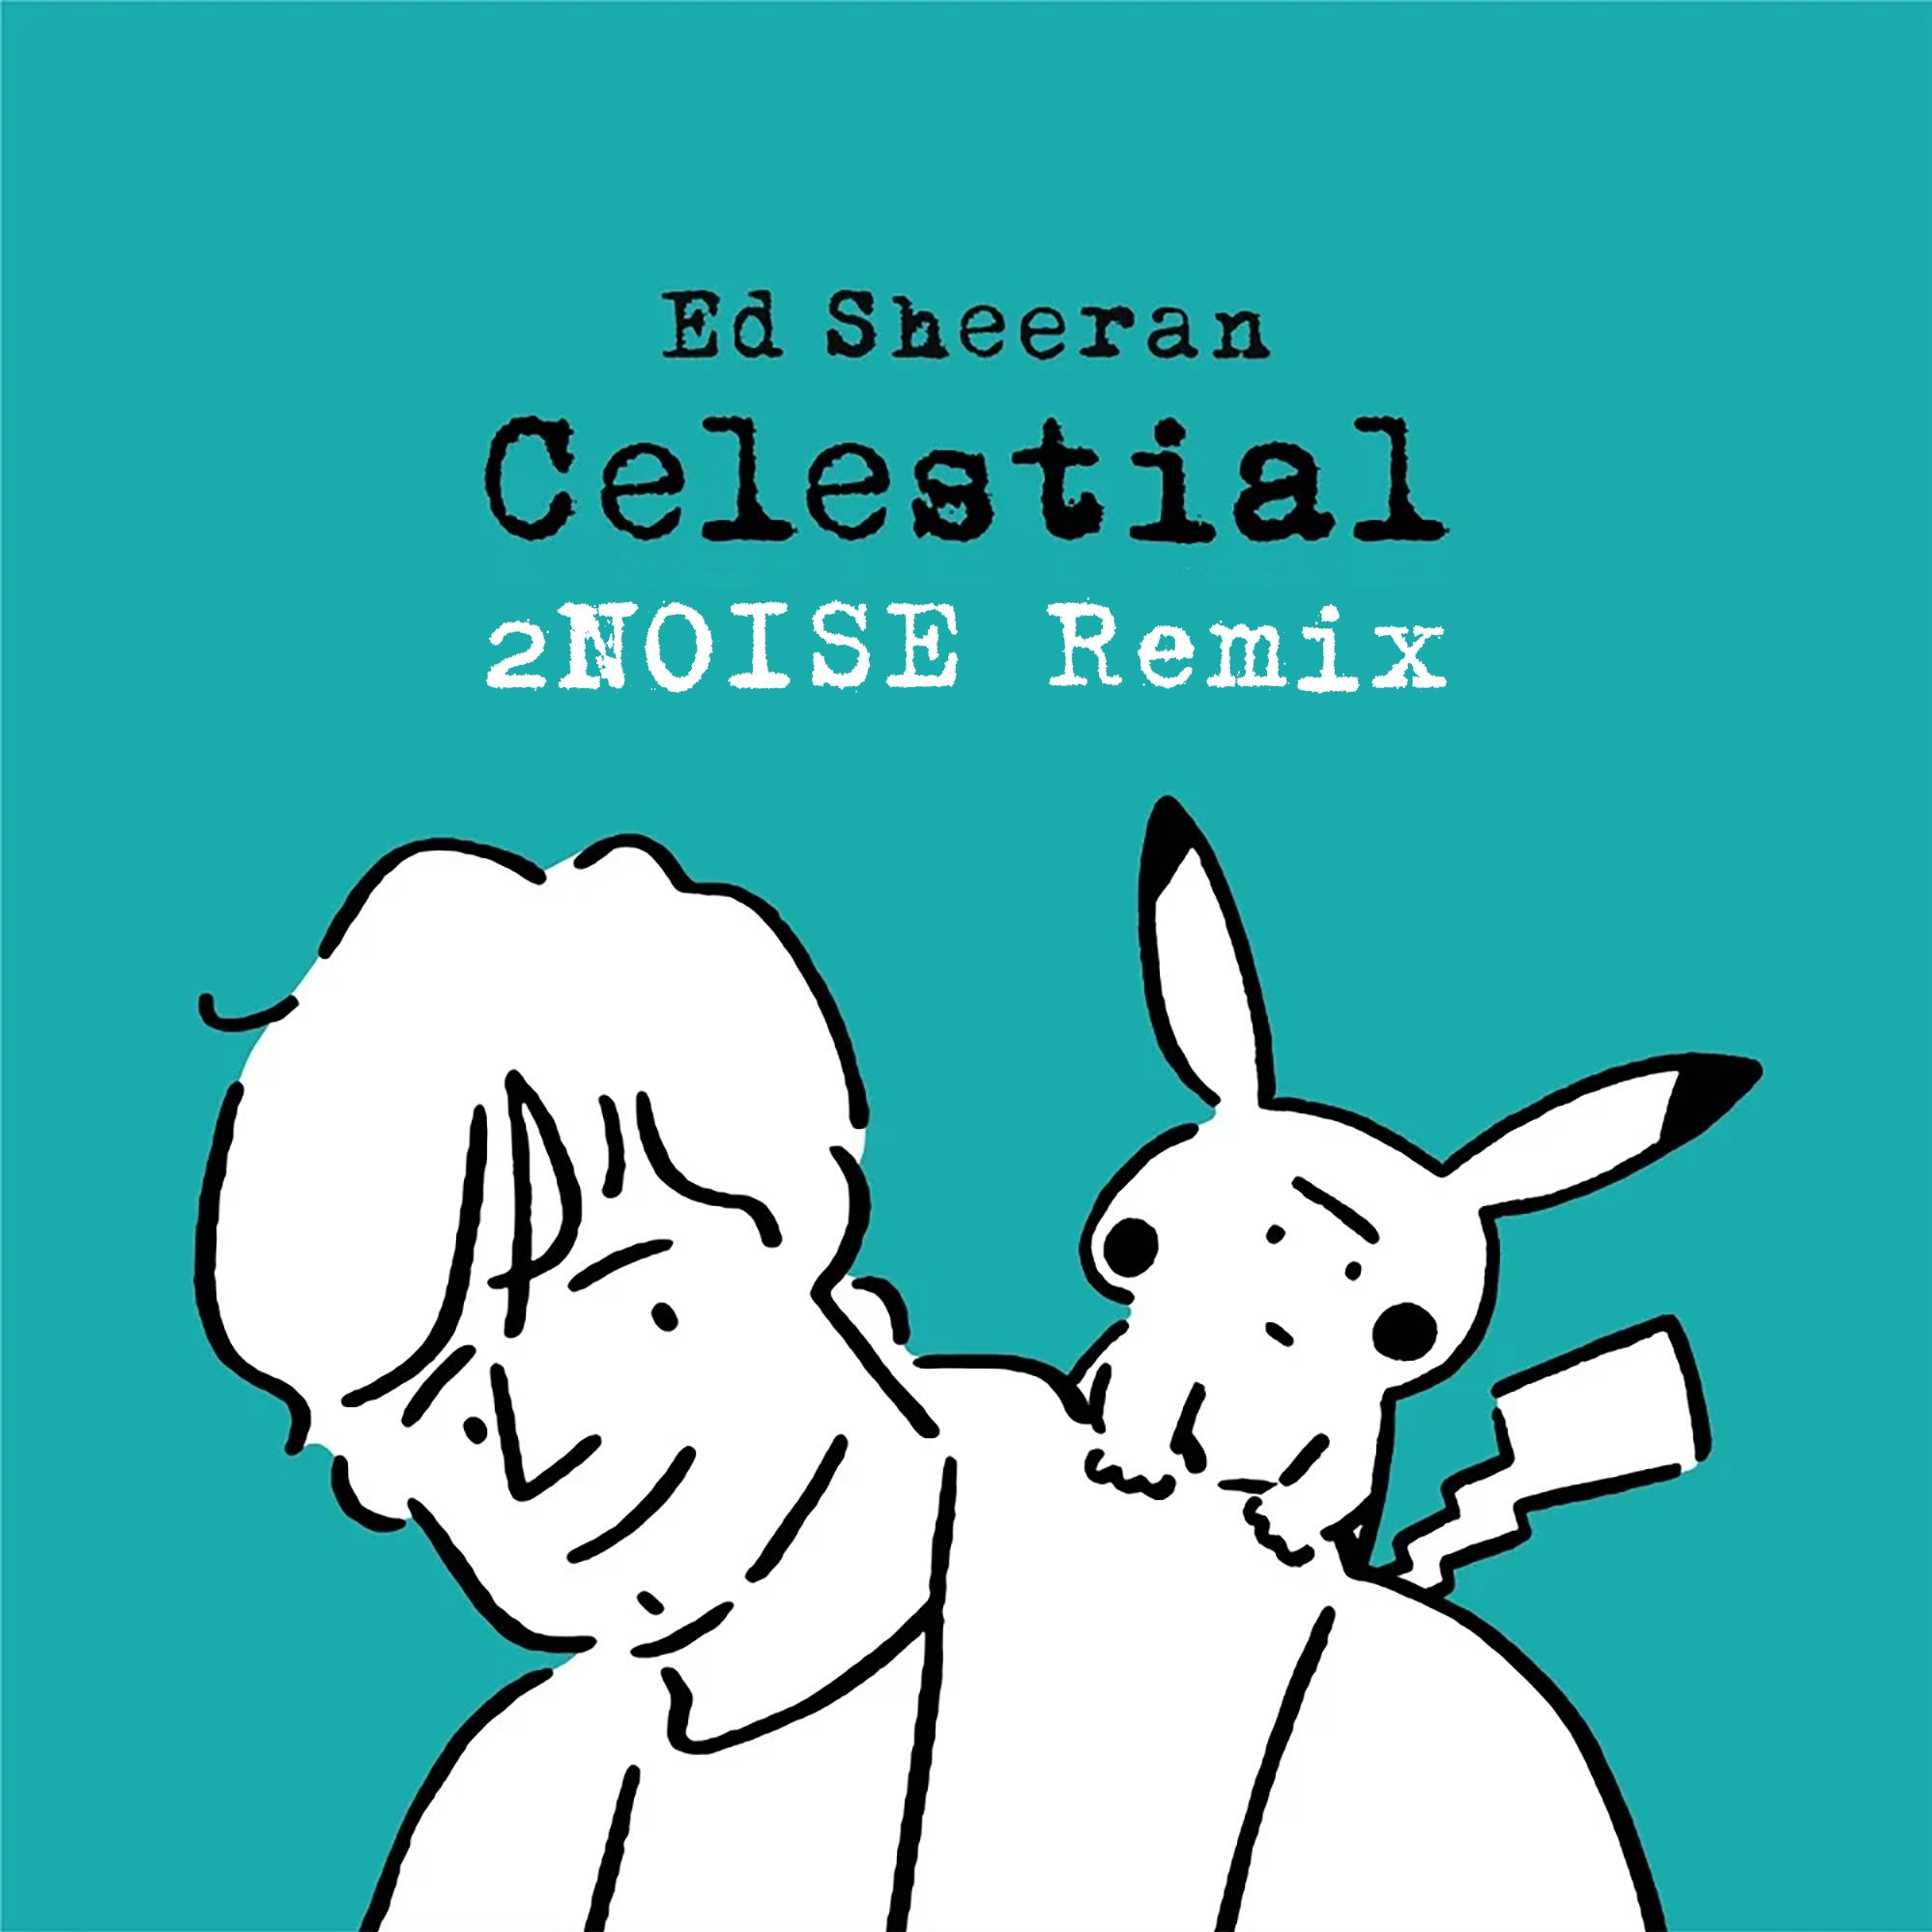 ਡਾਉਨਲੋਡ ਕਰੋ Ed Sheeran - Celestial (2NOISE Remix) [Progressive]